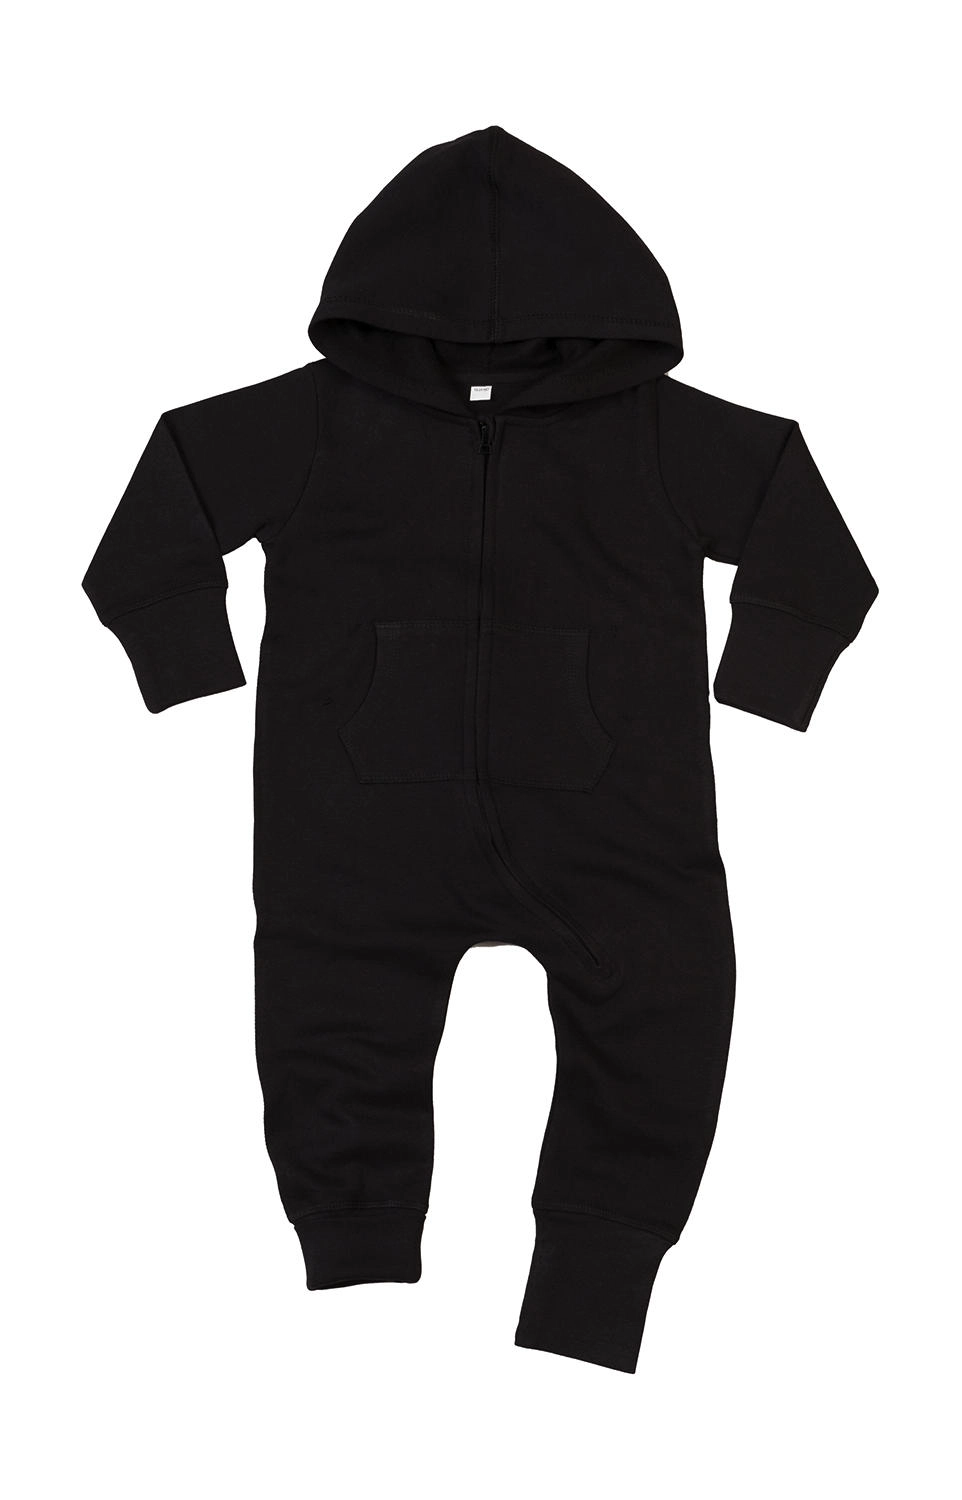 Baby All-in-One zum Besticken und Bedrucken in der Farbe Black mit Ihren Logo, Schriftzug oder Motiv.